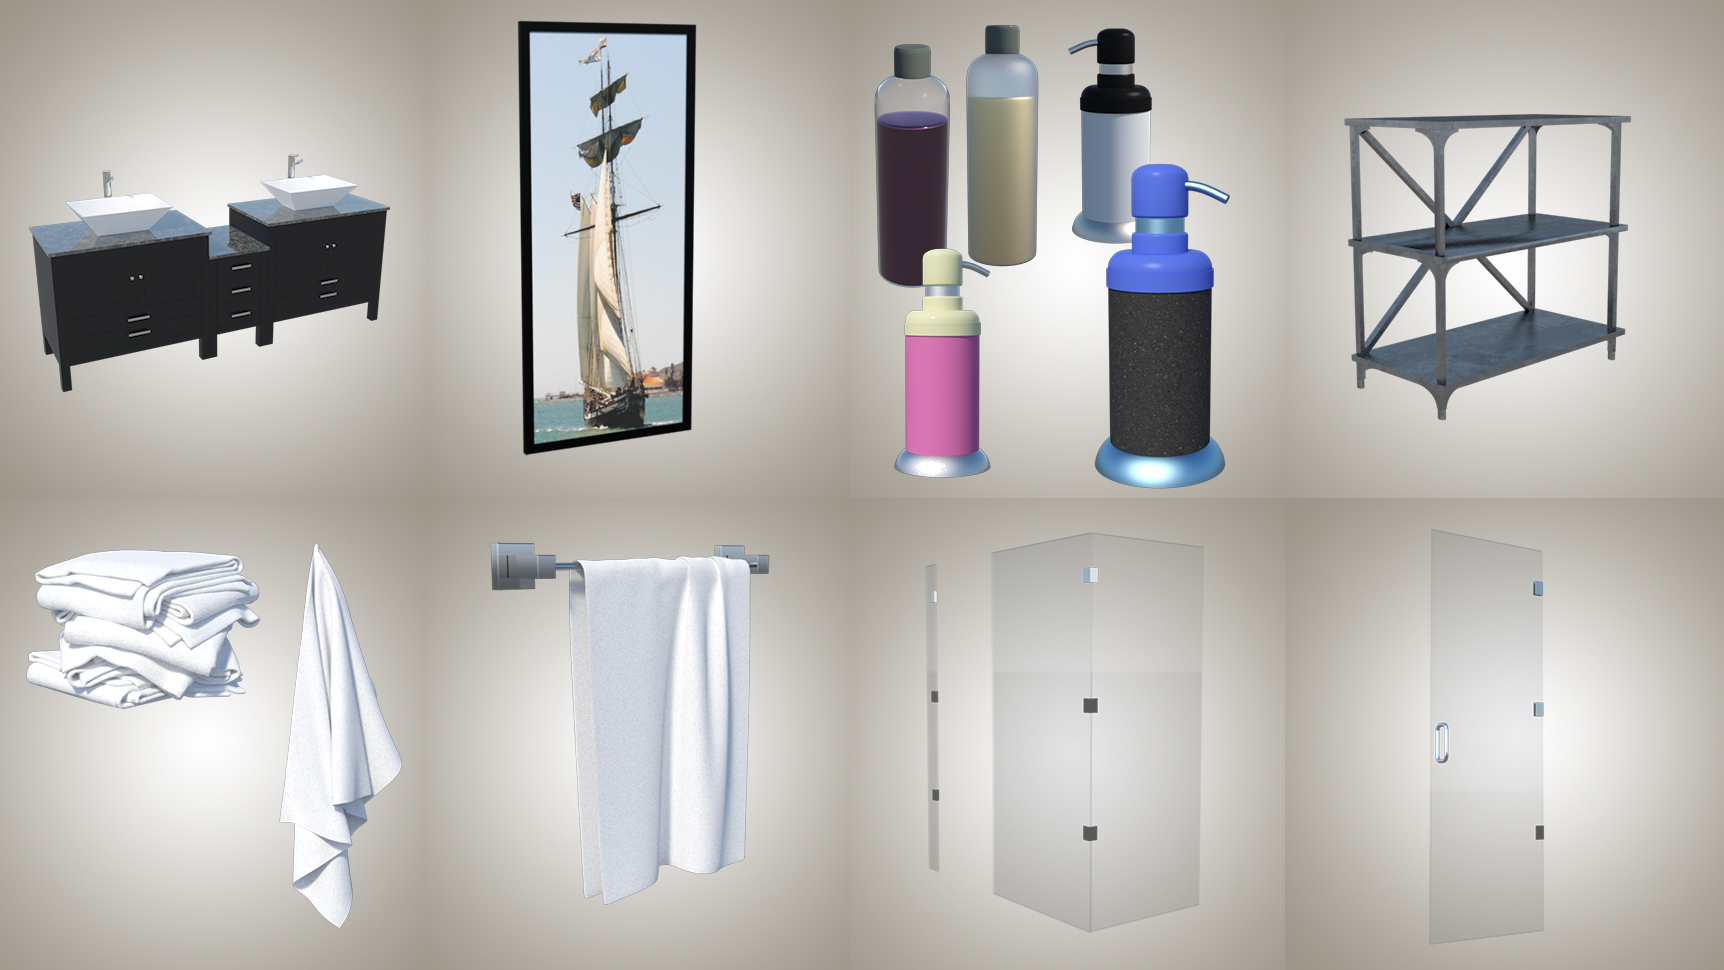 Regatta Bathroom by: kubramatic, 3D Models by Daz 3D